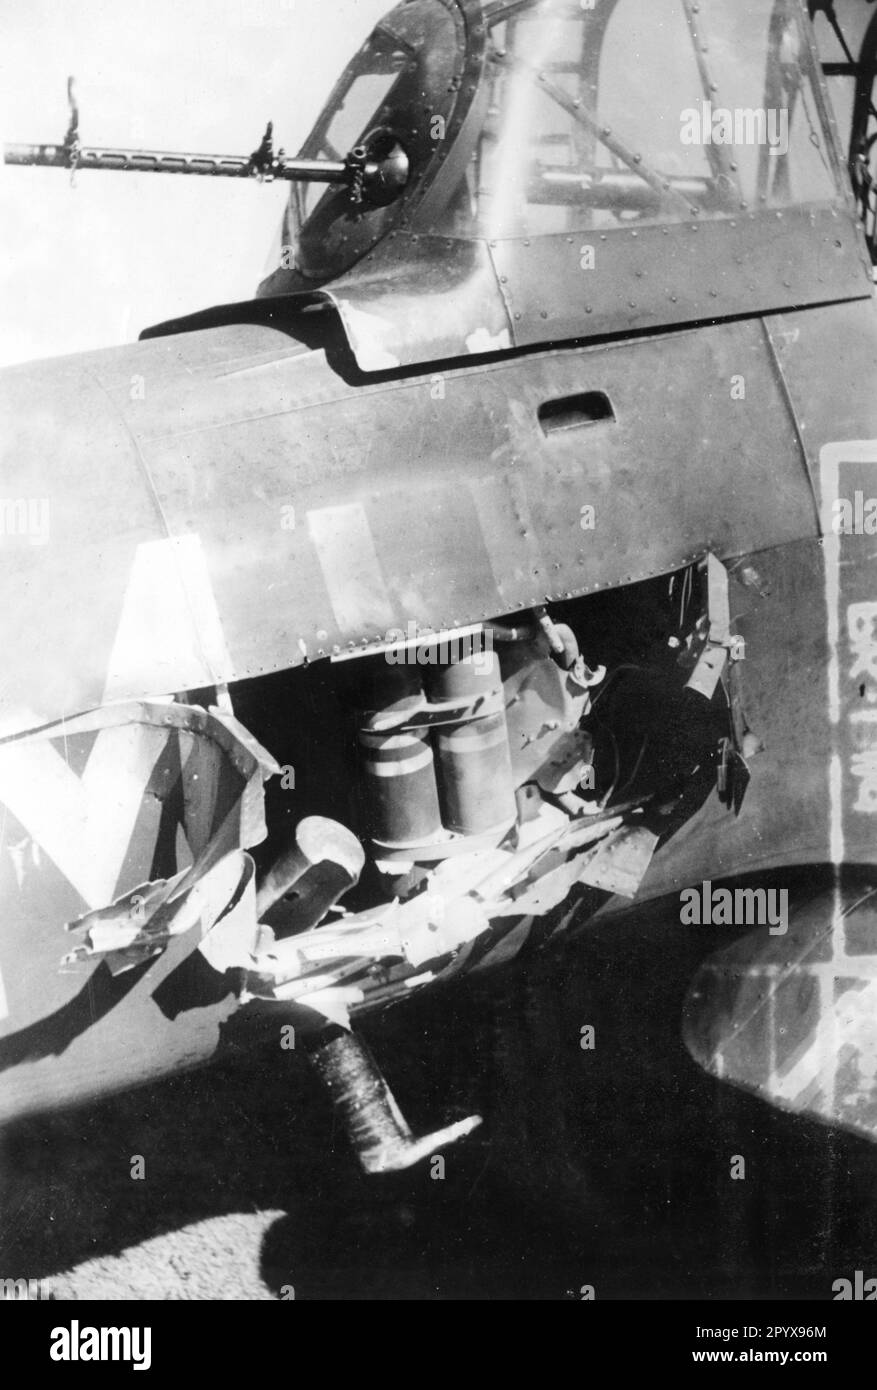 "Junkers Ju 87" "Stuka", nachdem er von einer Mission gegen England auf seinem Flugplatz gelandet war, mit Schäden durch die Verteidigung. Foto: Onken. [Maschinelle Übersetzung]' Stockfoto